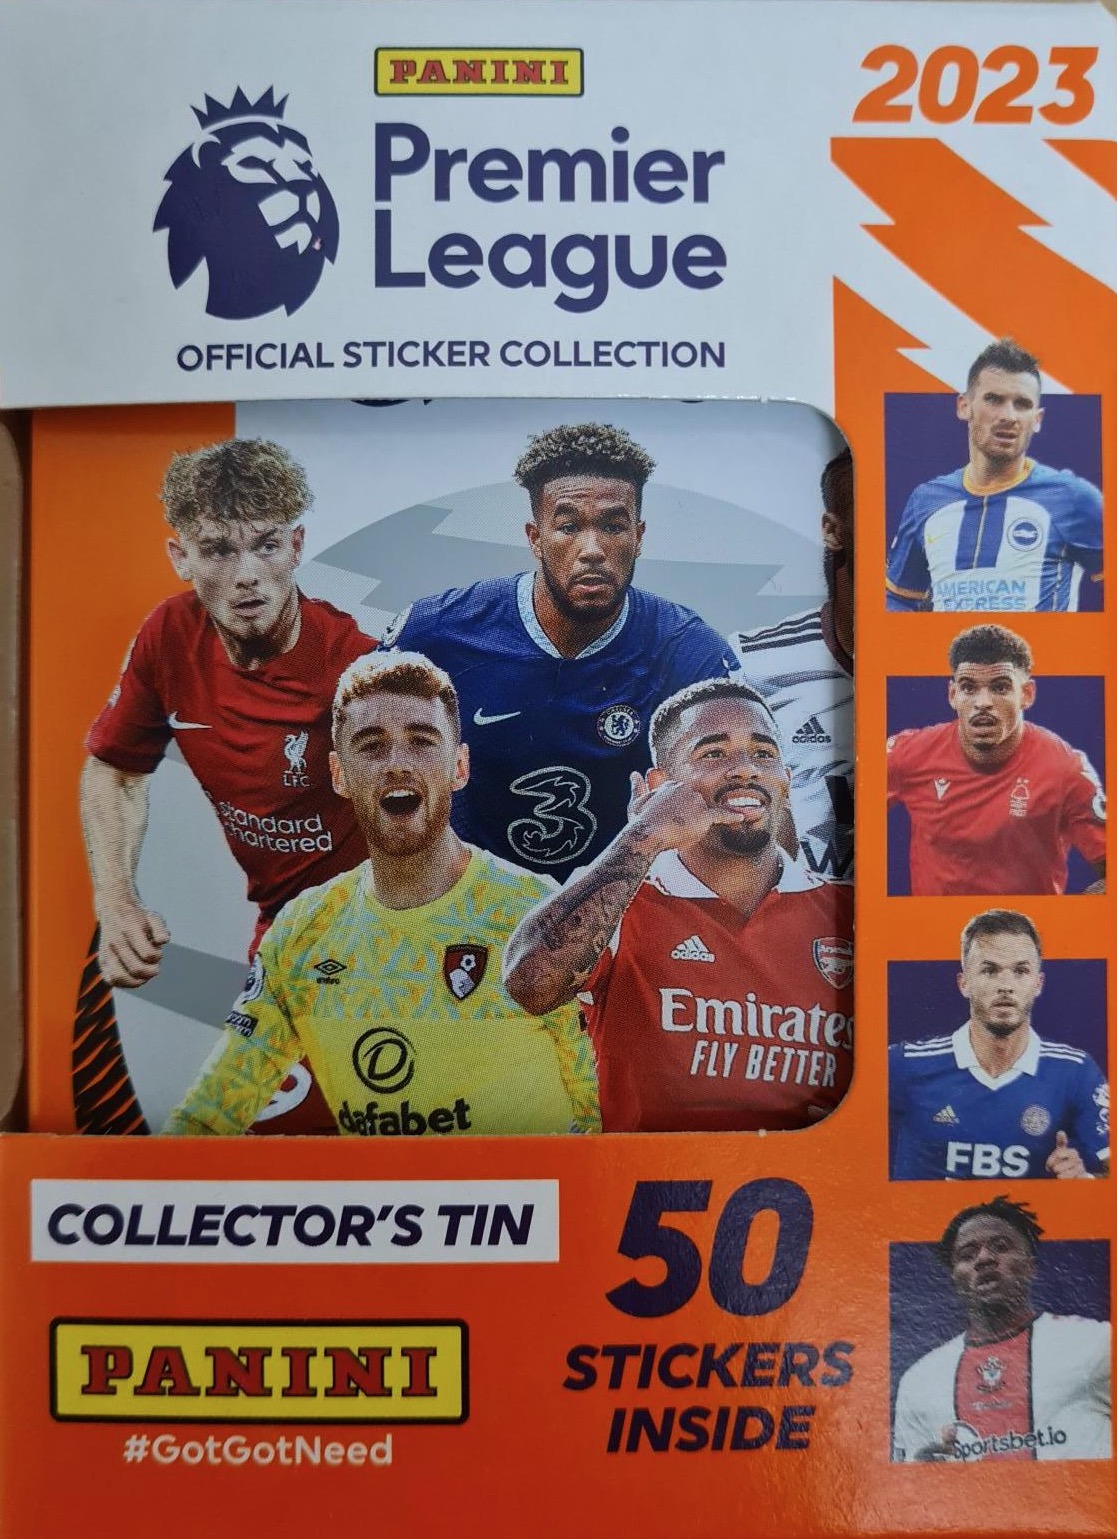 Premier League 2023 Stickers Collectors Tin